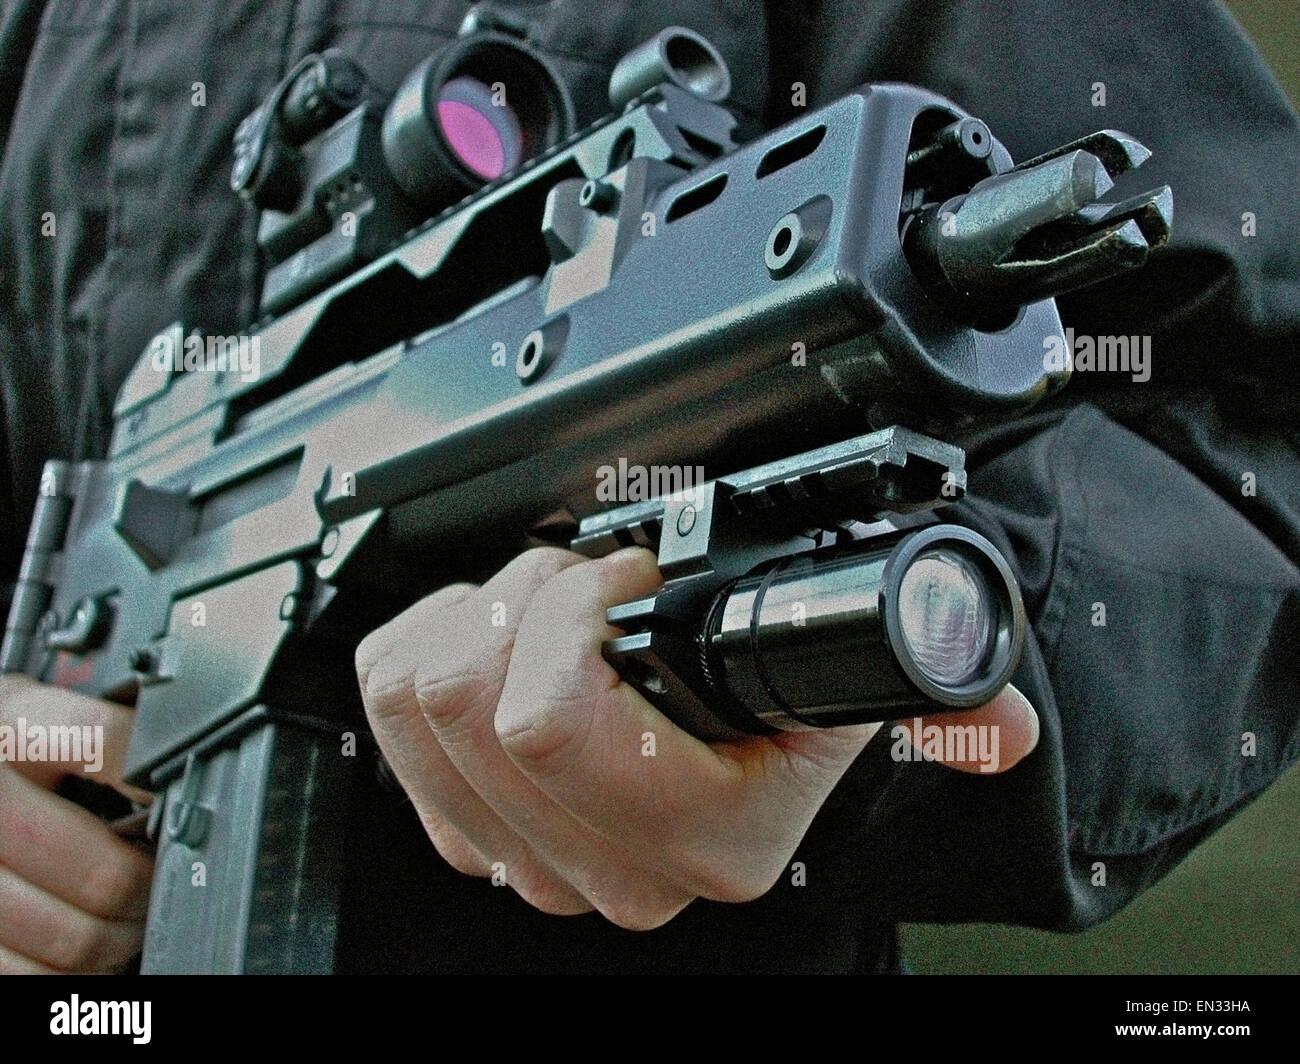 Una Heckler & Koch G36 C (5,56mm x 45 OTAN calibre Rifle de asalto de gas), favorecido por la ley británica (policía). Tiene las dimensiones de una ametralladora, combinada con la capacidad de penetración del calibre 5,56 OTAN. Foto de stock